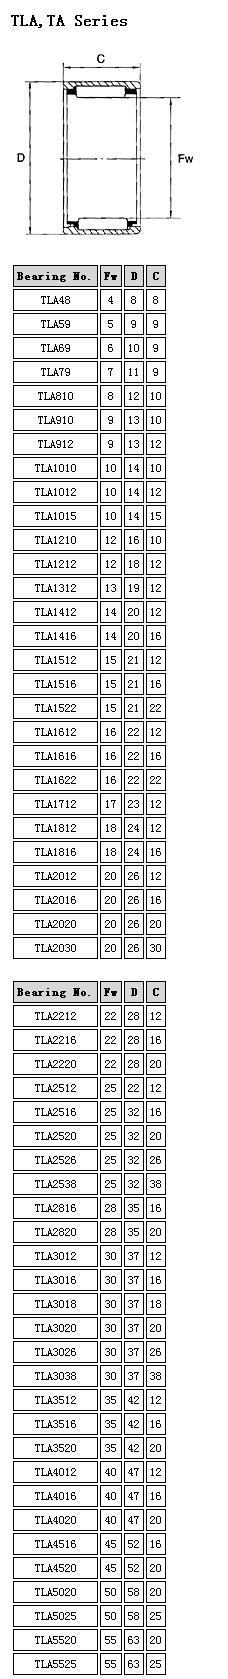 TLA48	 | 
TLA59	 | 
TLA69	 | 
TLA79	 | 
TLA810	 | 
TLA910	 | 
TLA912	 | 
TLA1010	 | 
TLA1012	 | 
TLA1015	 | 
TLA1210	 | 
TLA1212	 | 
TLA1312	 | 
TLA1412	 | 
TLA1416	 | 
TLA1512	 | 
TLA1516	 | 
TLA1522	 | 
TLA1612	 | 
TLA1616	 | 
TLA1622	 | 
TLA1712	 | 
TLA1812	 | 
TLA1816	 | 
TLA2012	 | 
TLA2016	 | 
TLA2020	 | 
TLA2030	 | 
Bearing No.	 | 
TLA2212	 | 
TLA2216	 | 
TLA2220	 | 
TLA2512	 | 
TLA2516	 | 
TLA2520	 | 
TLA2526	 | 
TLA2538	 | 
TLA2816	 | 
TLA2820	 | 
TLA3012	 | 
TLA3016	 | 
TLA3018	 | 
TLA3020	 | 
TLA3026	 | 
TLA3038	 | 
TLA3512	 | 
TLA3516	 | 
TLA3520	 | 
TLA4012	 | 
TLA4016	 | 
TLA4020	 | 
TLA4516	 | 
TLA4520	 | 
TLA5020	 | 
TLA5025	 | 
TLA5520	 | 
TLA5525	 | 